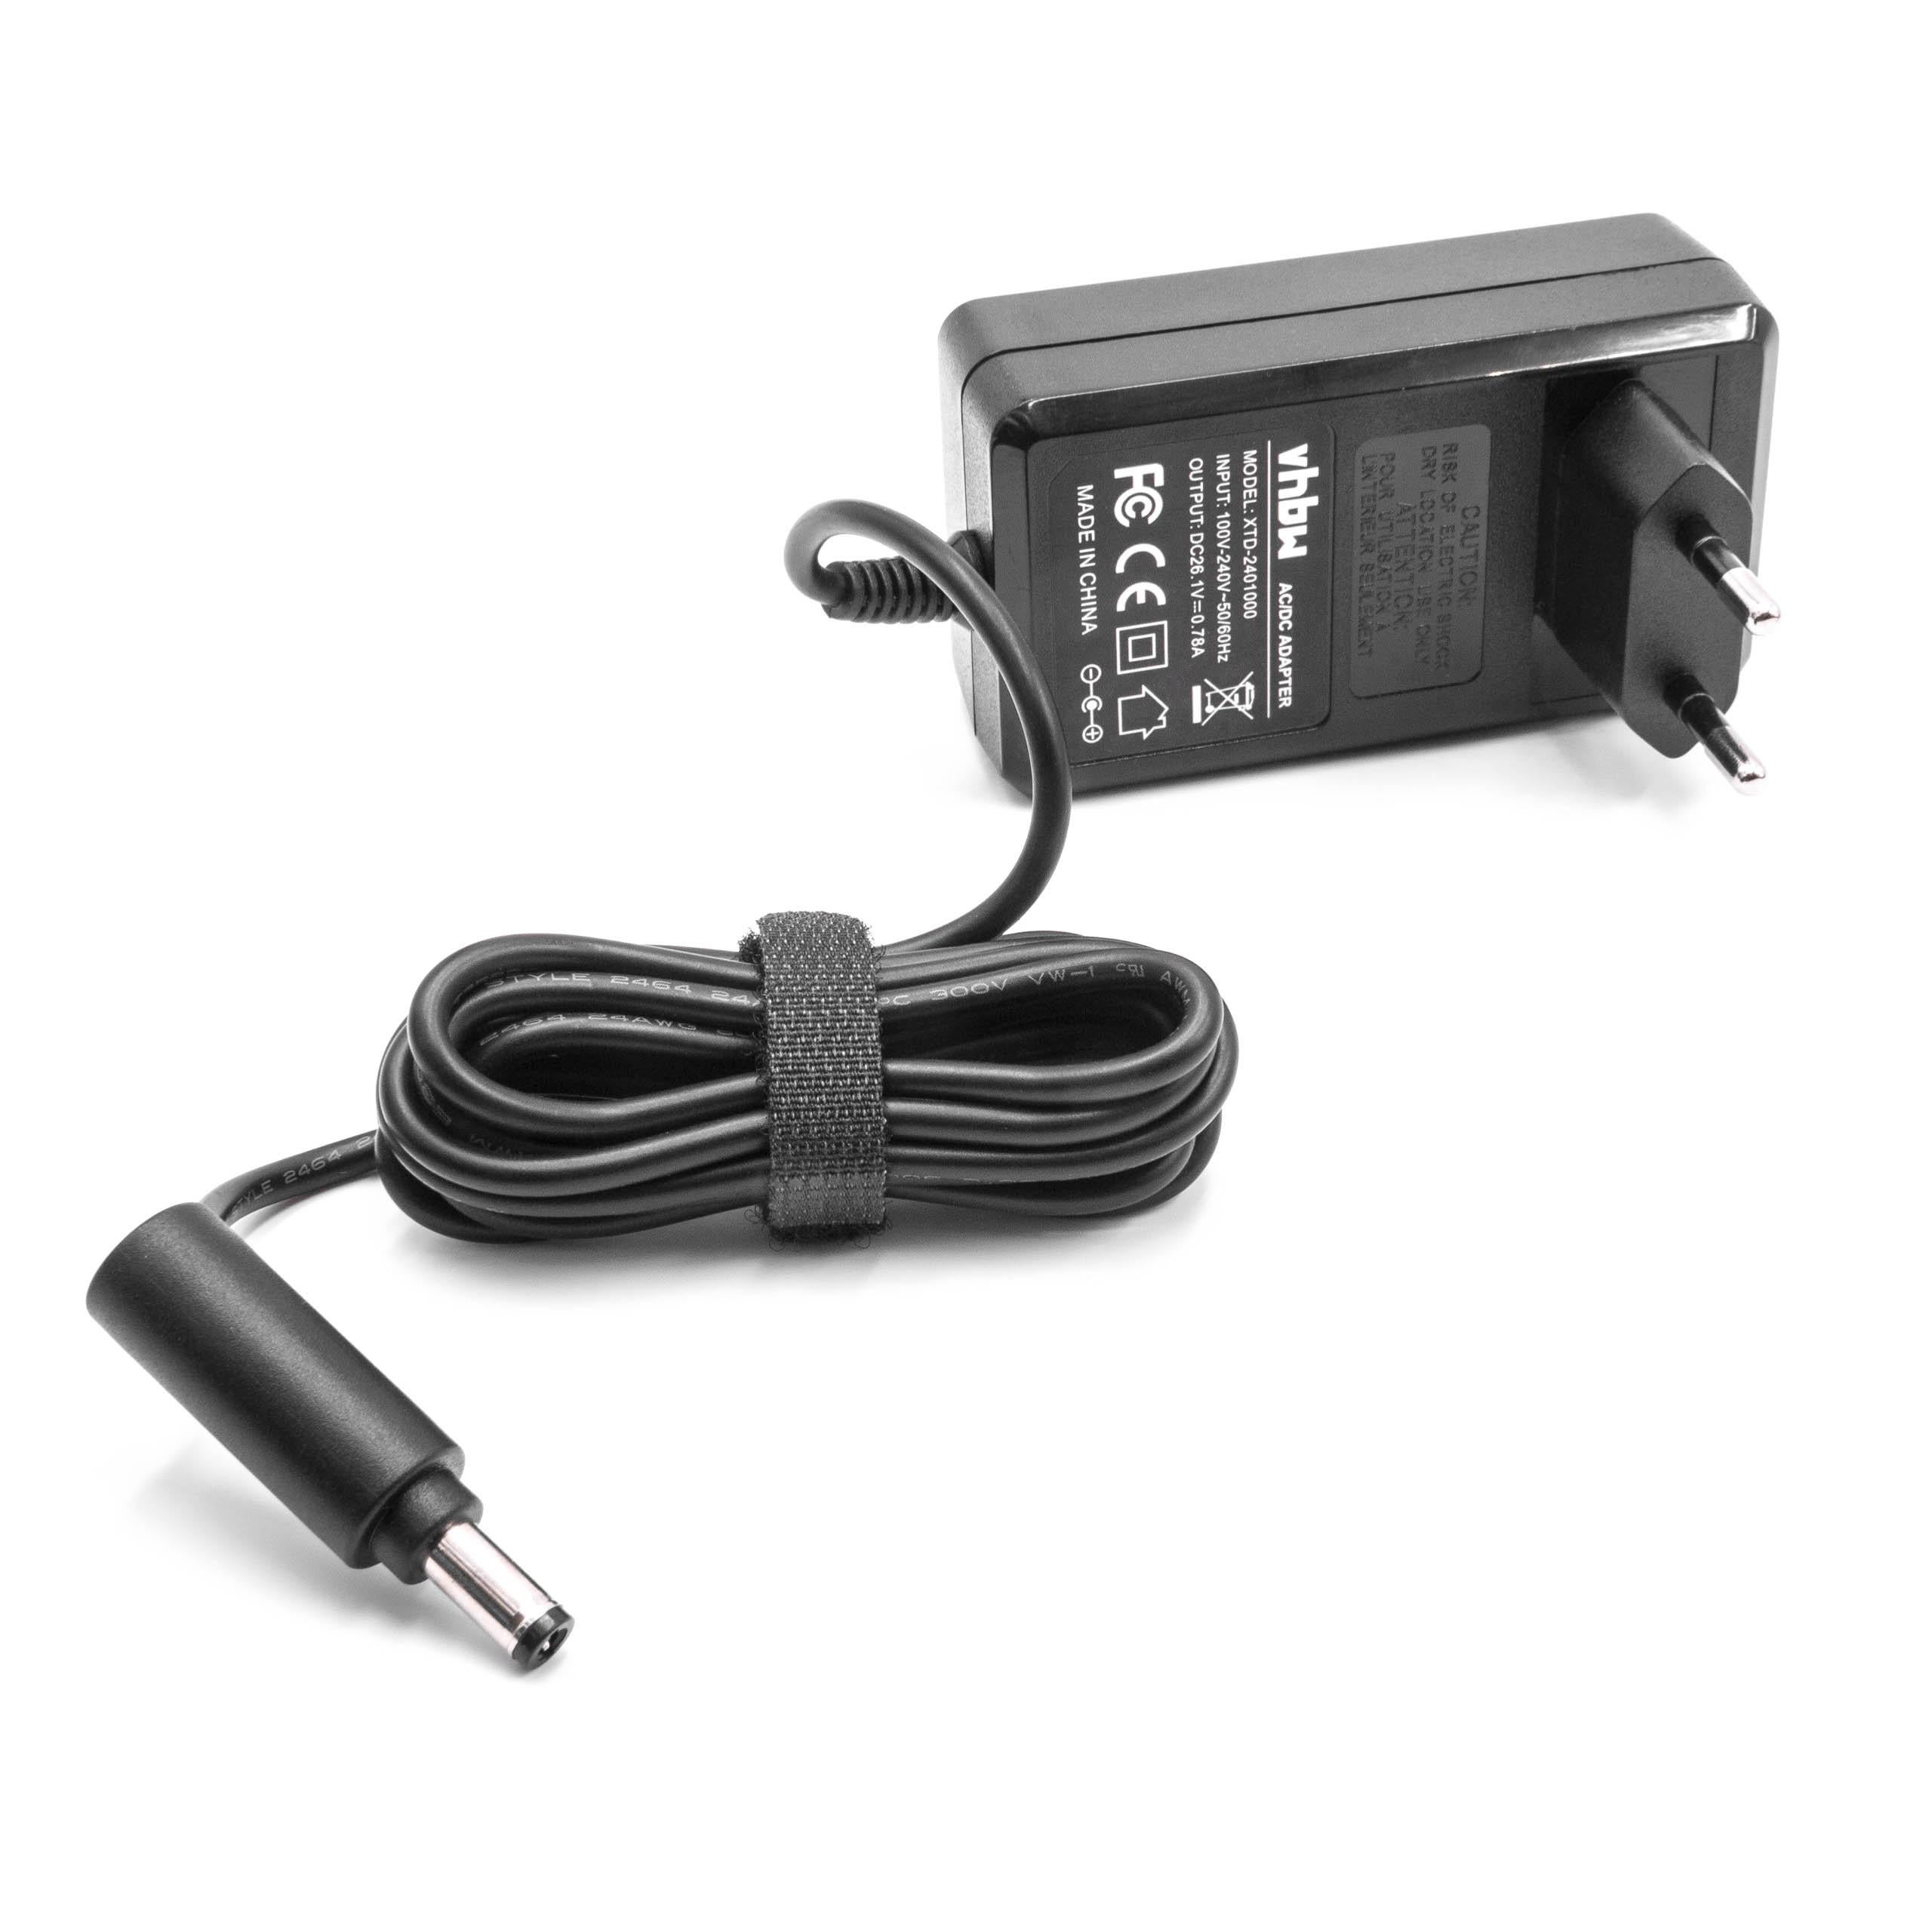 Vhbw Chargeur compatible avec Black & Decker Dustbuster DVJ315J, DVJ320J,  DVJ325J aspirateur balai sans fil ou à main